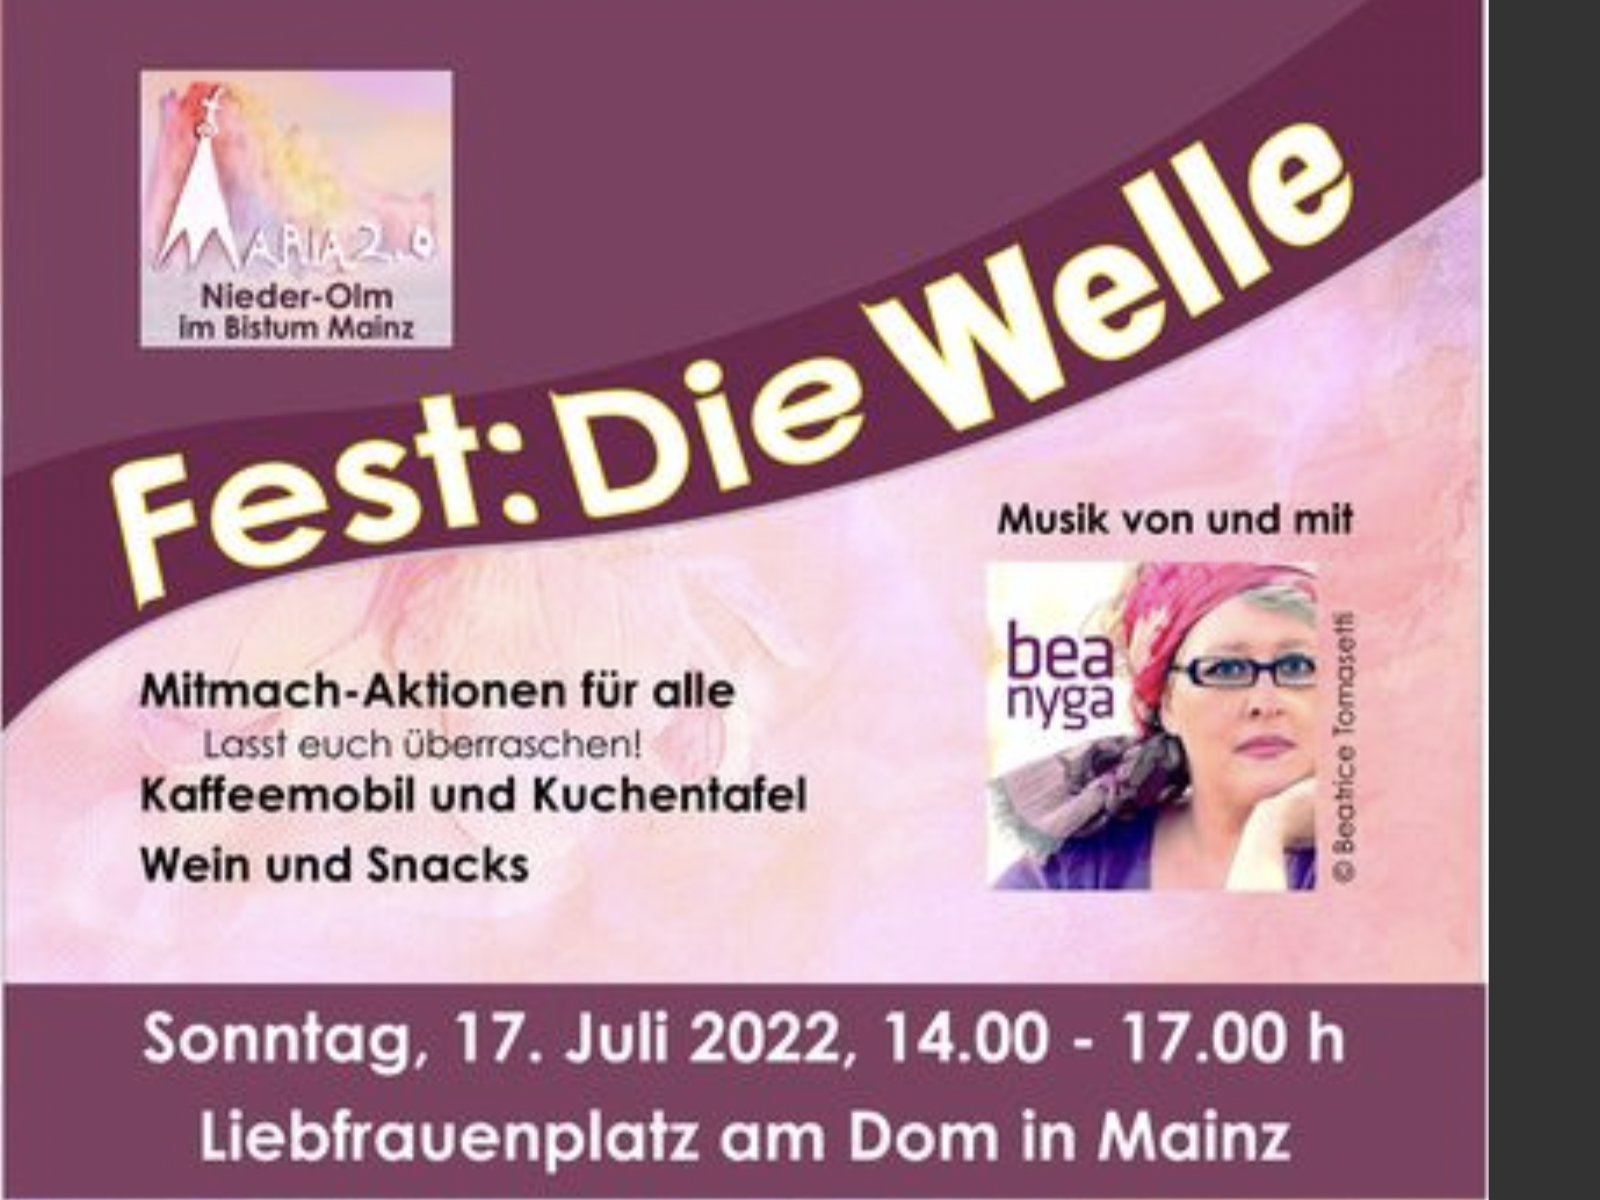 Fest: Die Welle, Sonntag 17. Juli 2022 in Mainz